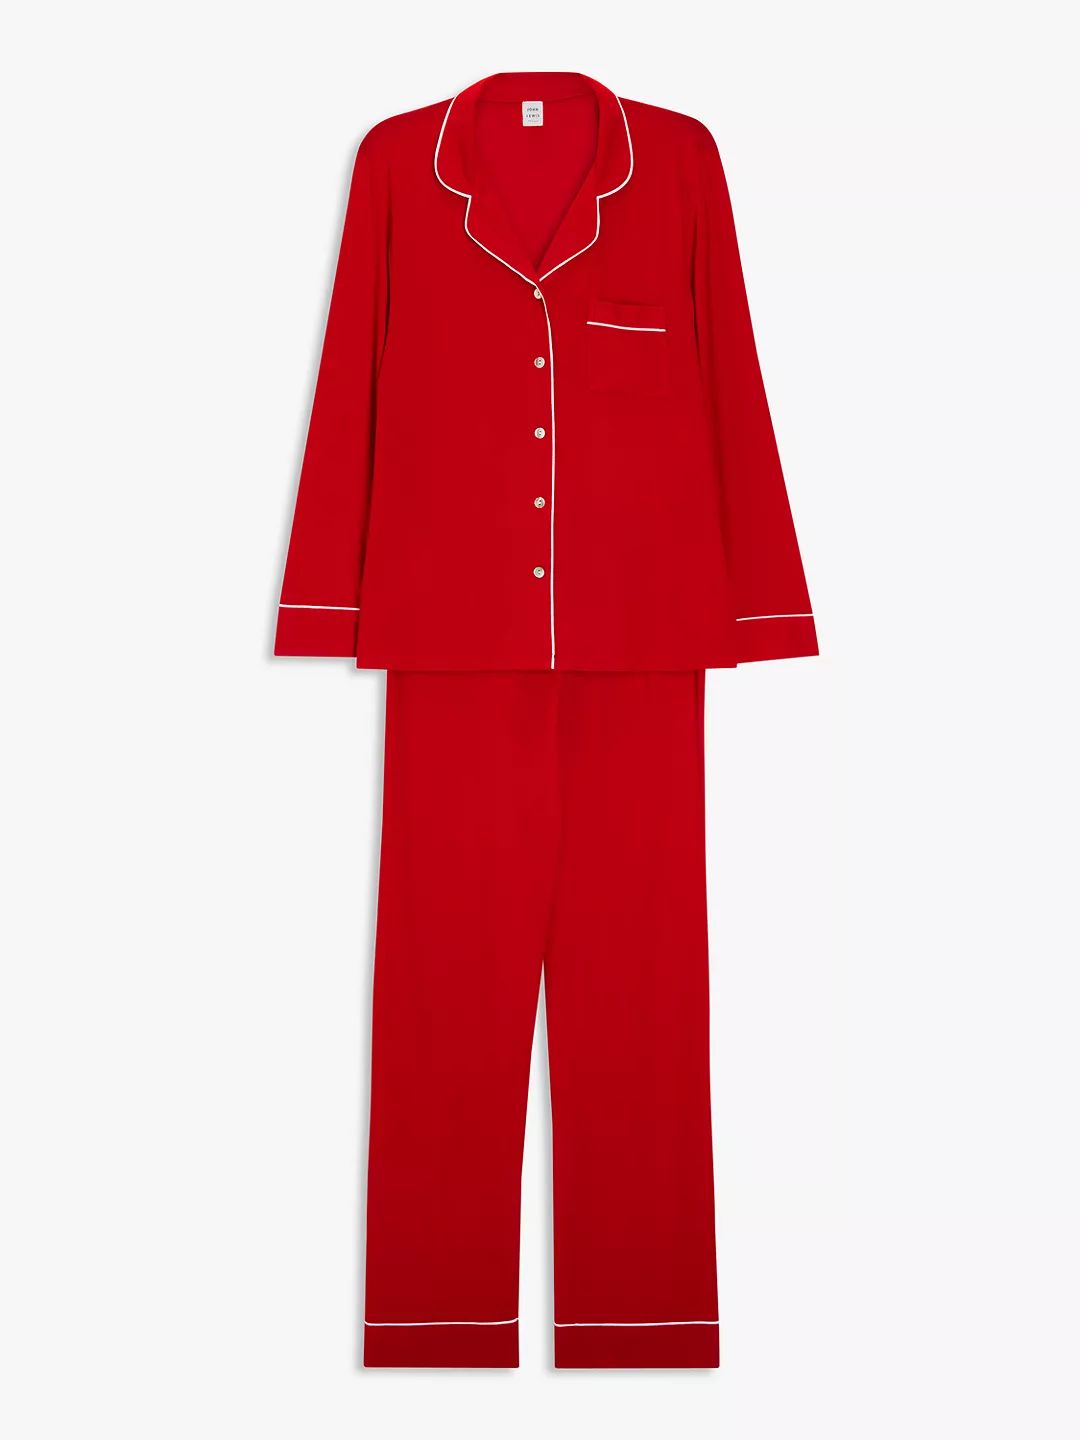 John Lewis Aria Modal Pyjama Set, Red | John Lewis (UK)